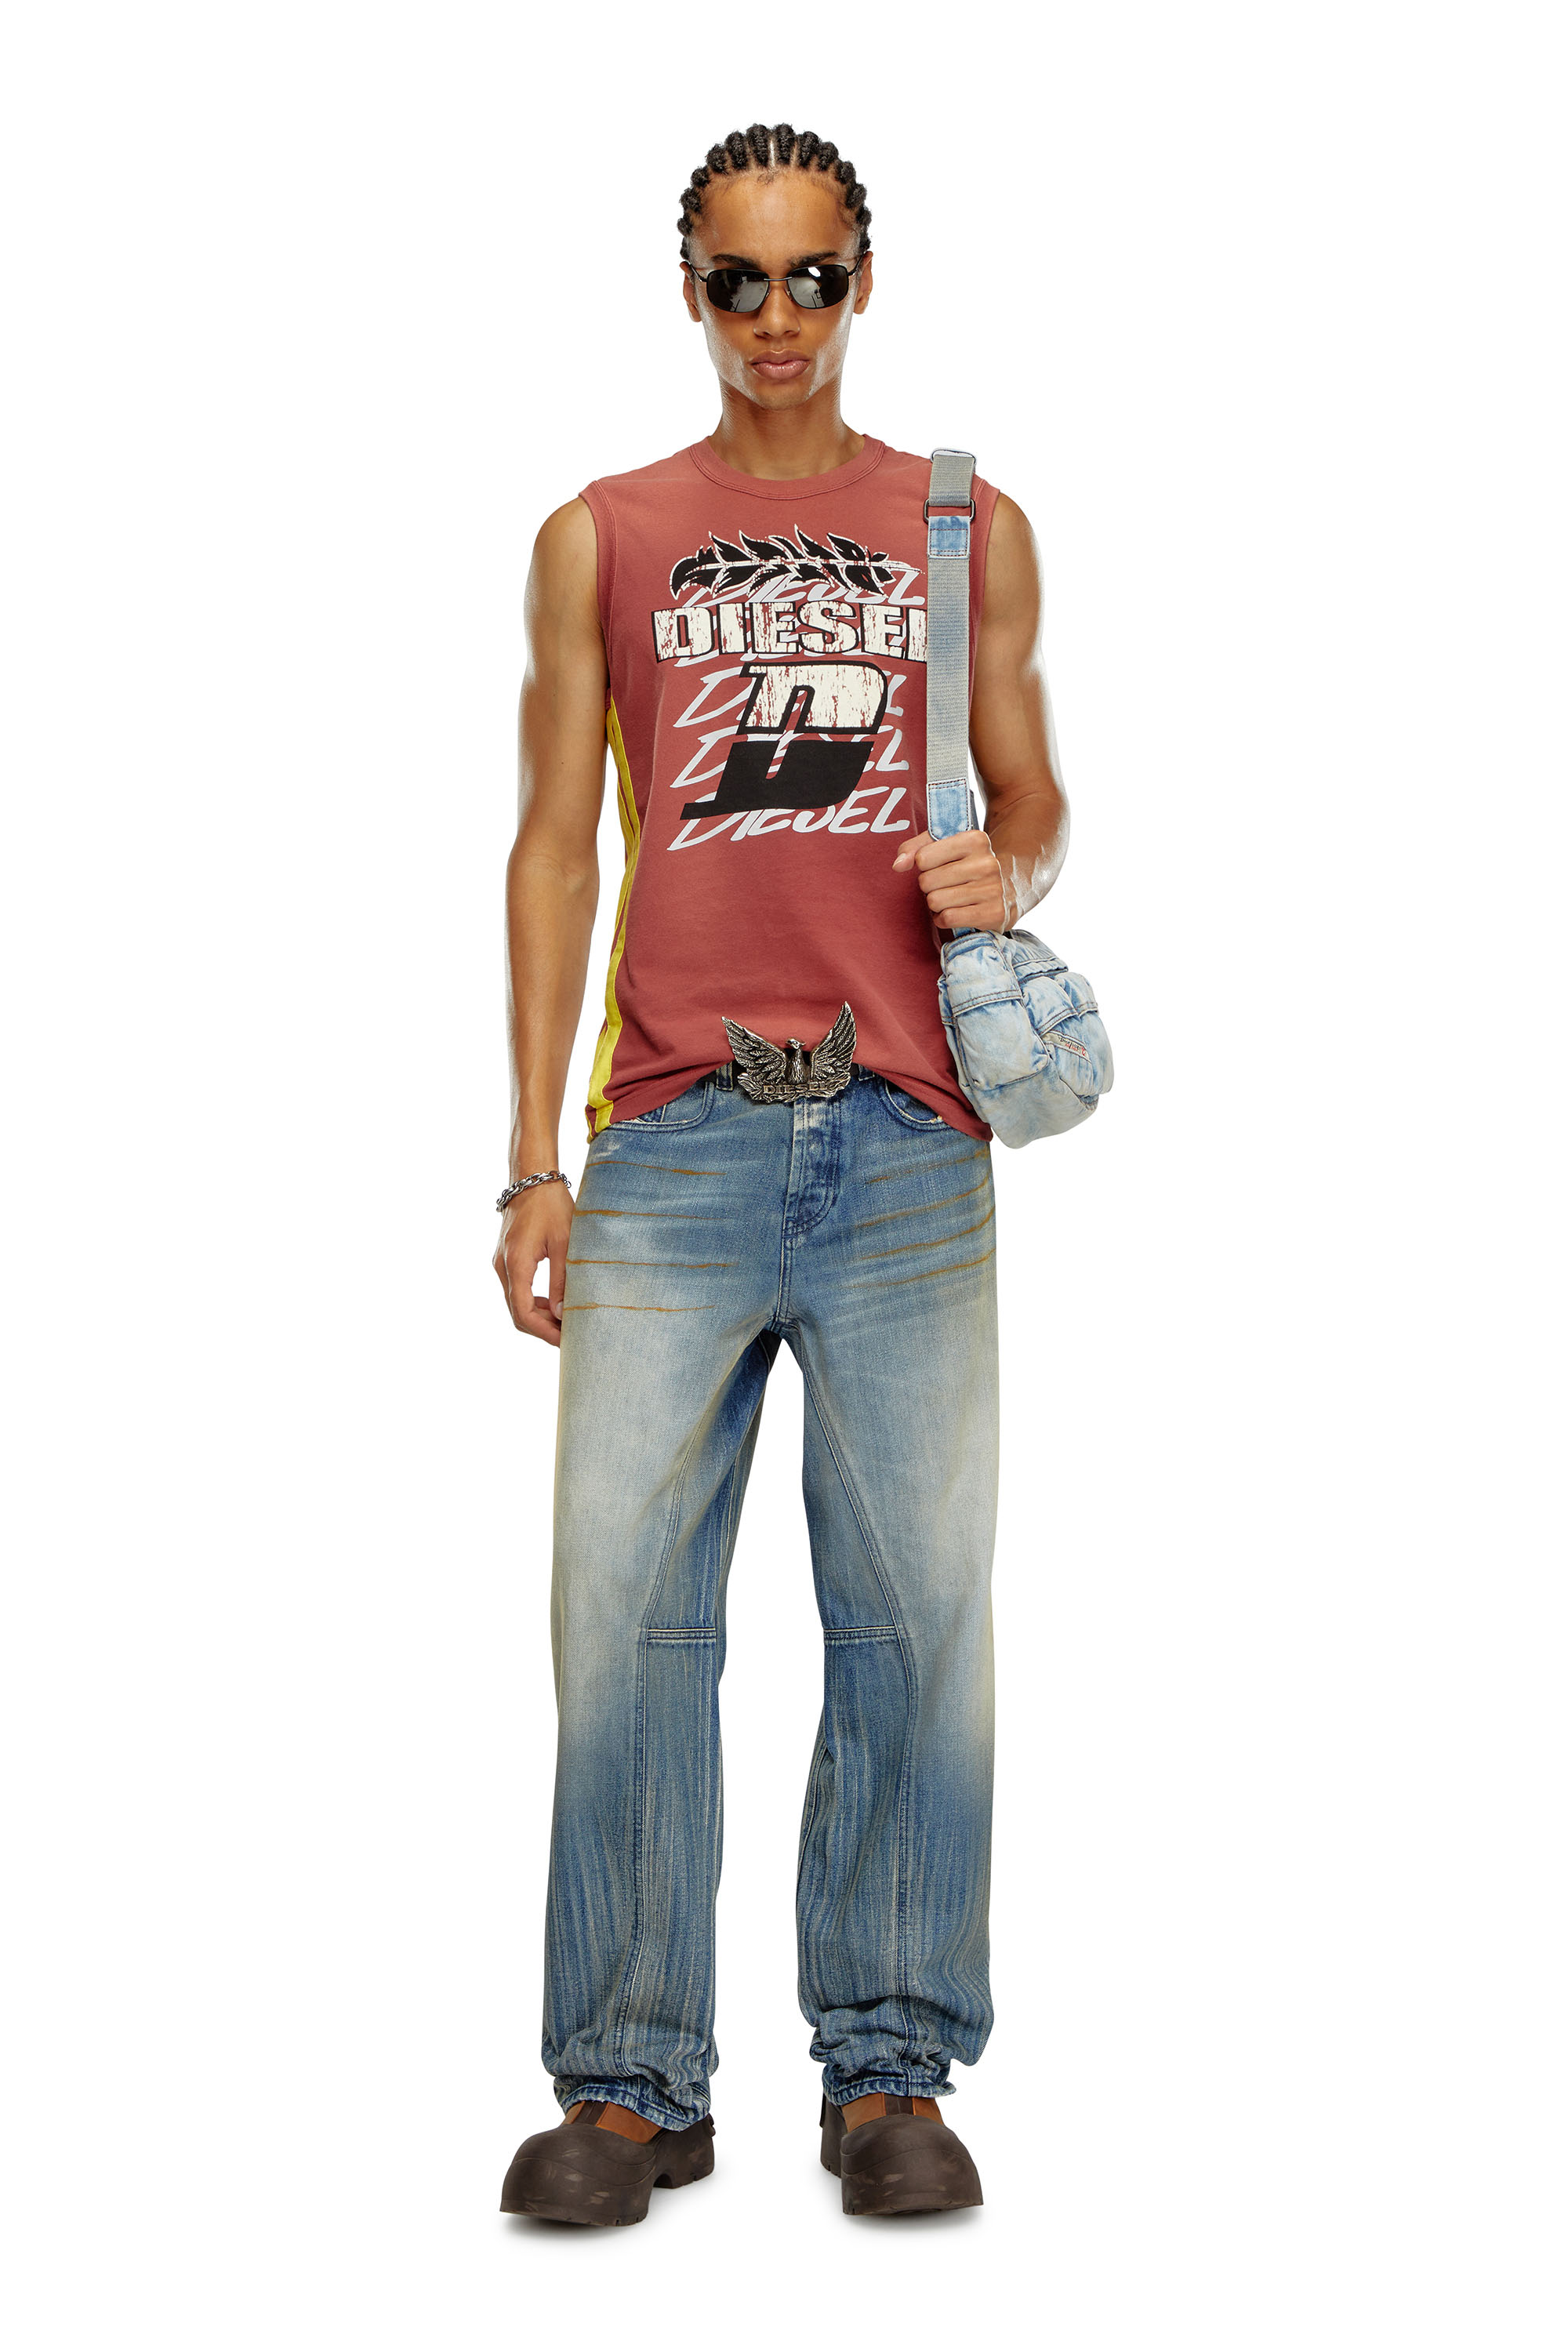 Diesel - T-BISCO-STRIPE, Hombre Camiseta sin mangas desteñida por el sol con bandas laterales in Rojo - Image 2